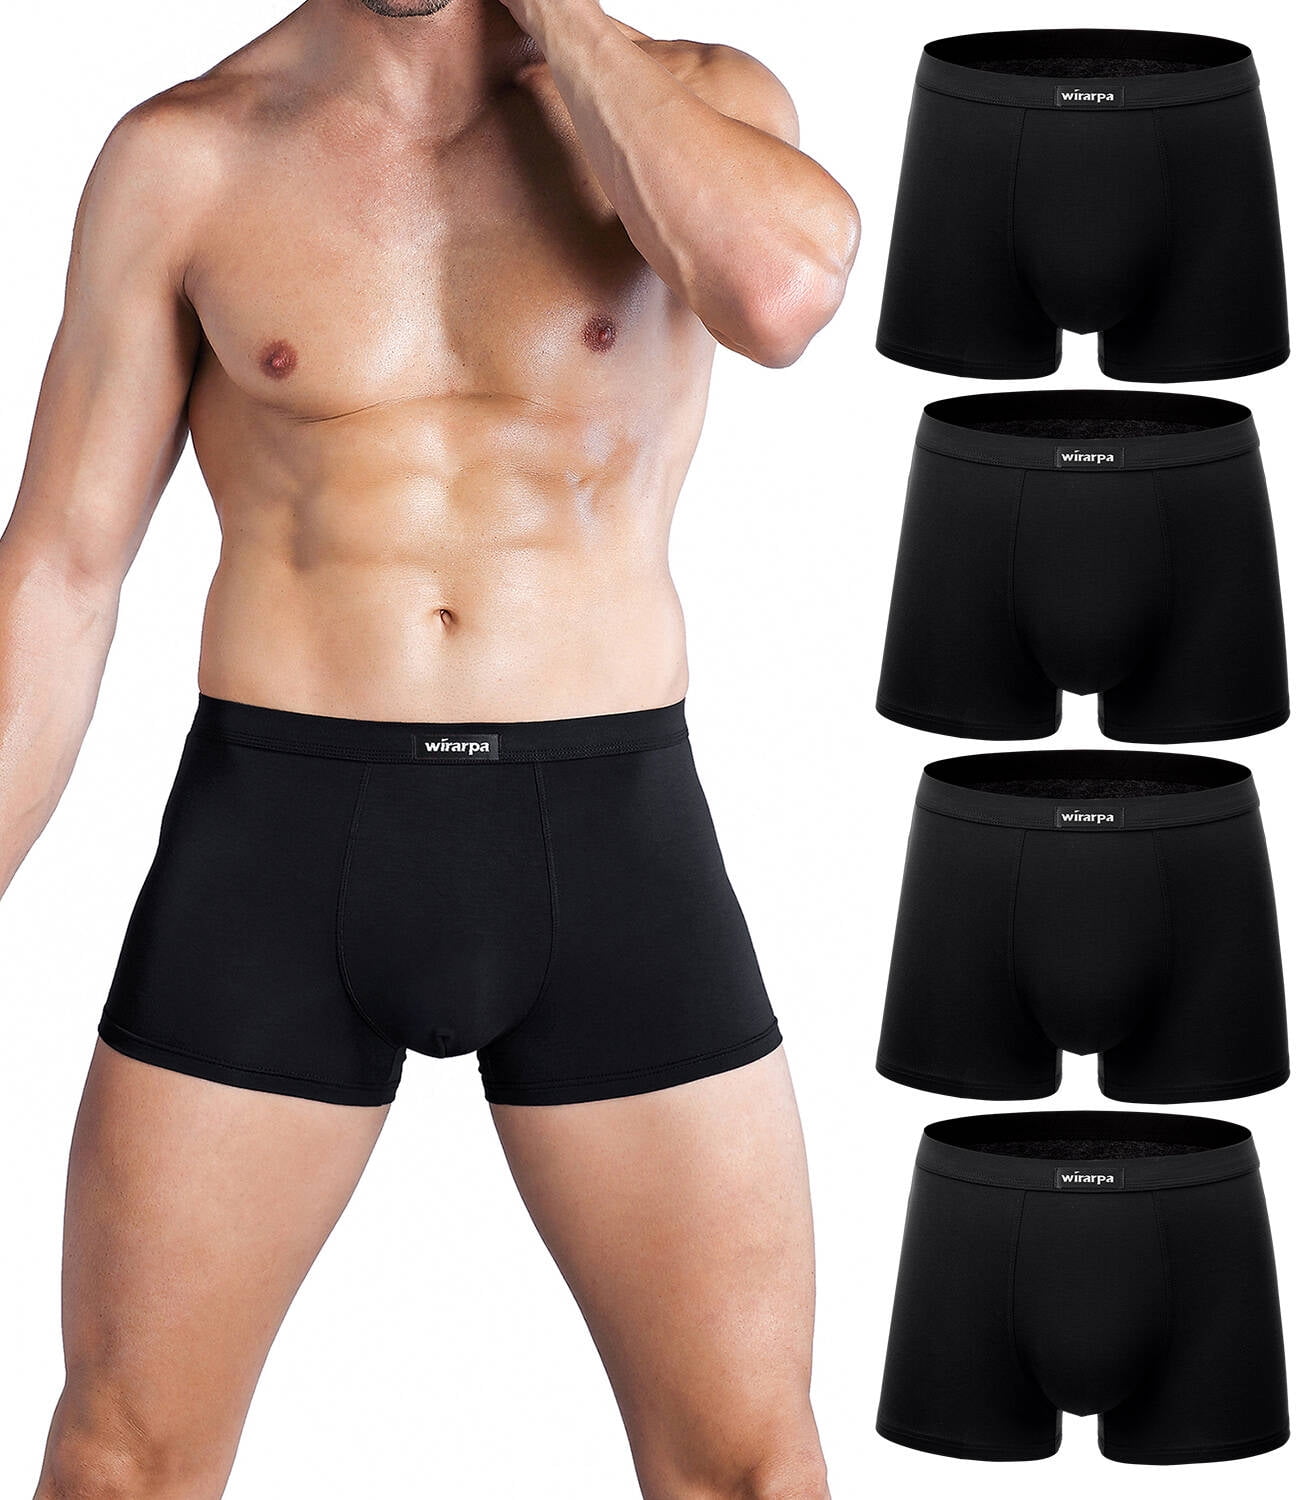 wirarpa Men's Trunk Underwear Short Leg Boxer Briefs Black 4 Pack Sizes  S-3XL 